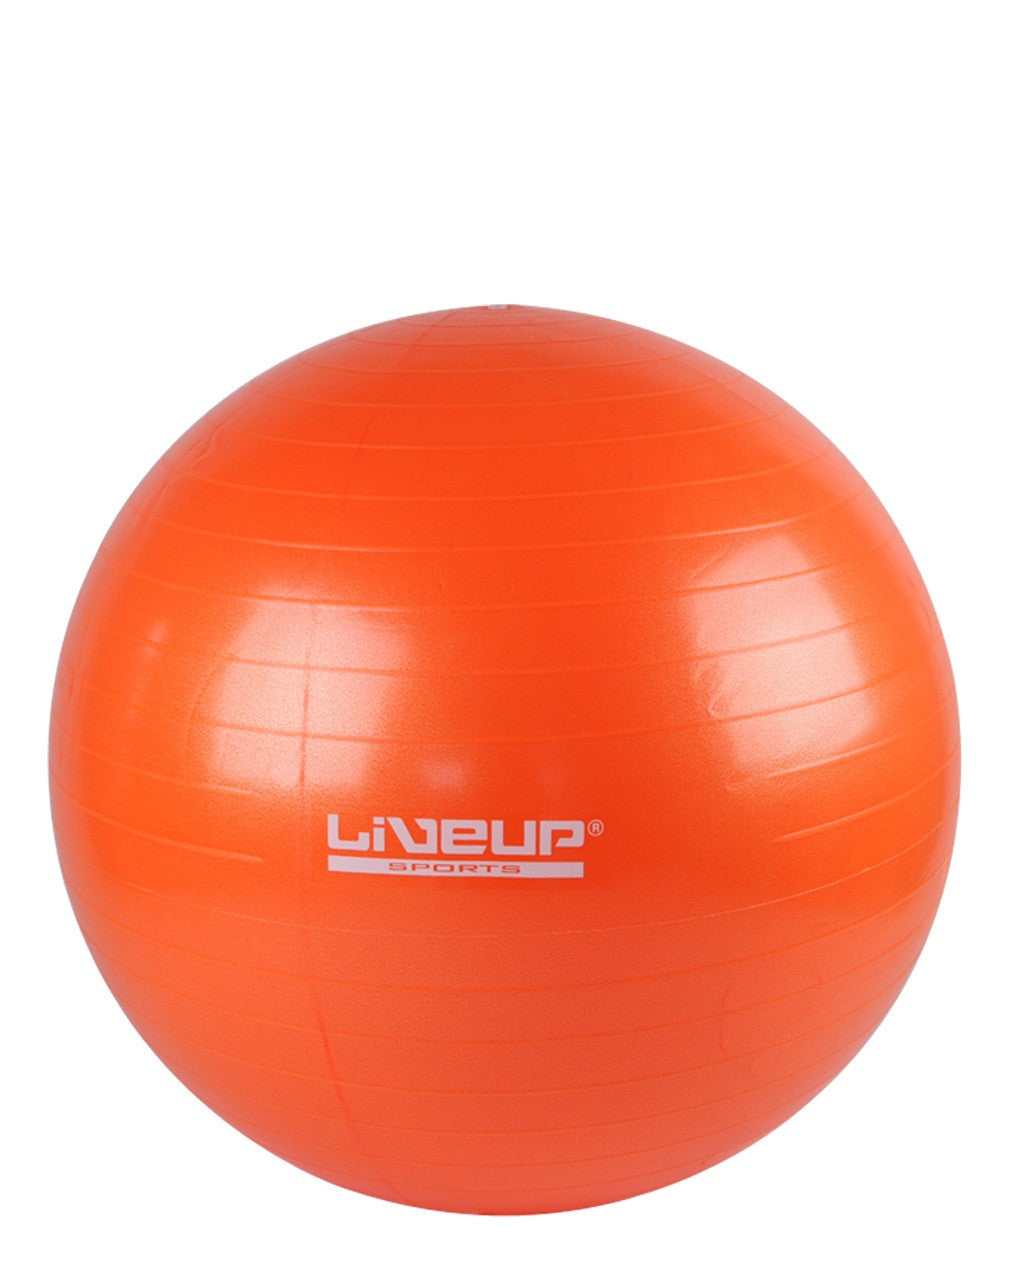 High Grade Exercise Ball - Burst Resistant - Orange